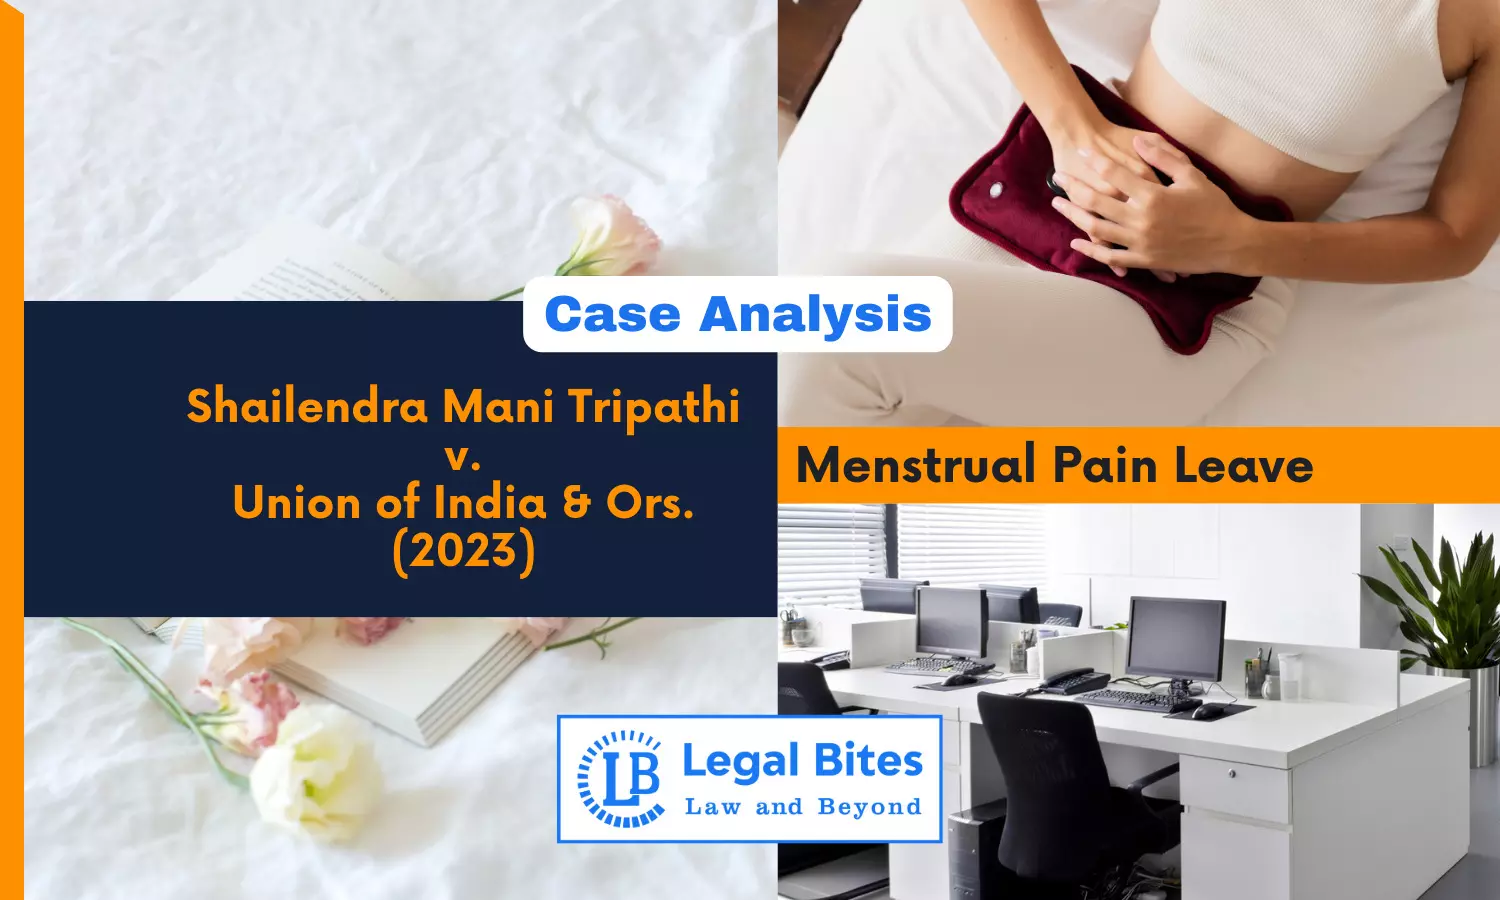 Case Analysis: Shailendra Mani Tripathi v. Union of India and Ors., (2023) | Menstrual Pain Leave